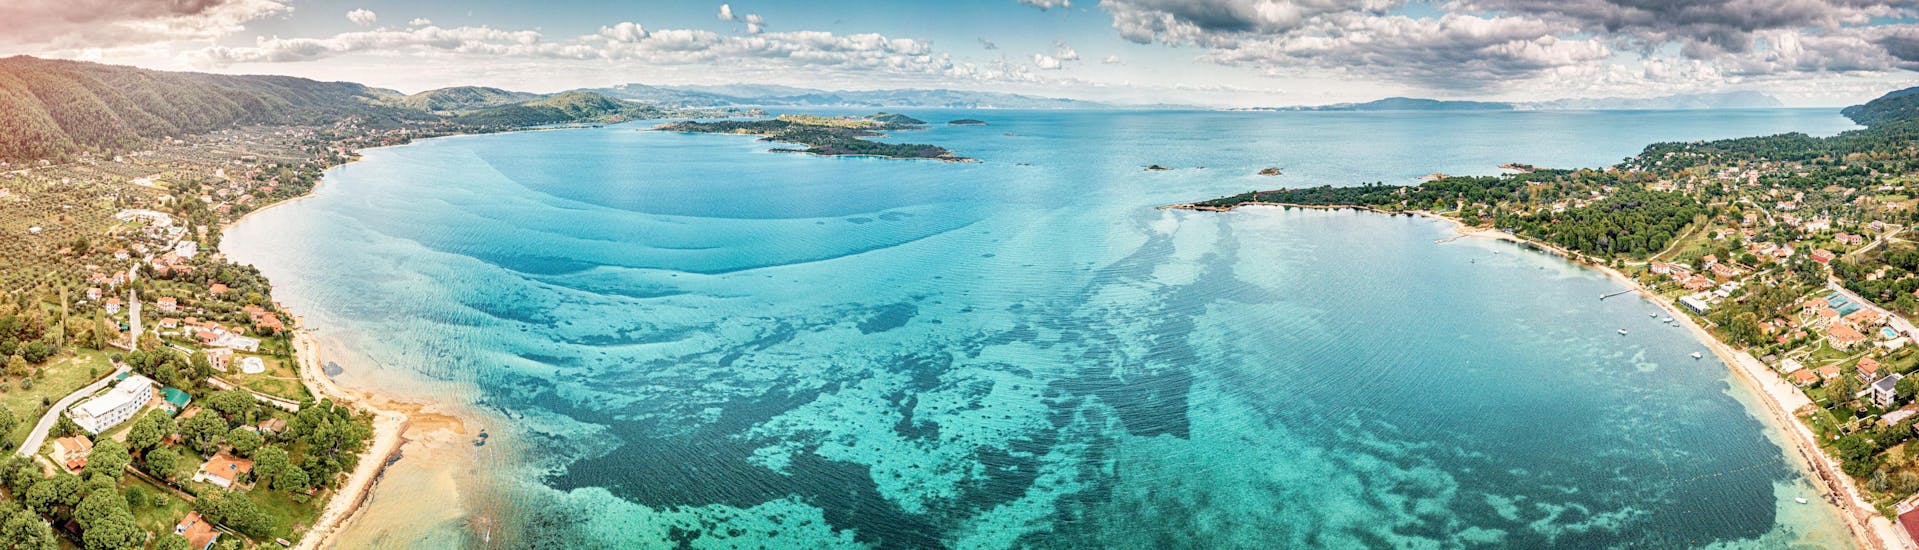 Panoramisch uitzicht vanuit de lucht op azuurblauwe lagune en paradijselijke baai met majestueuze patronen op een zeeplank.